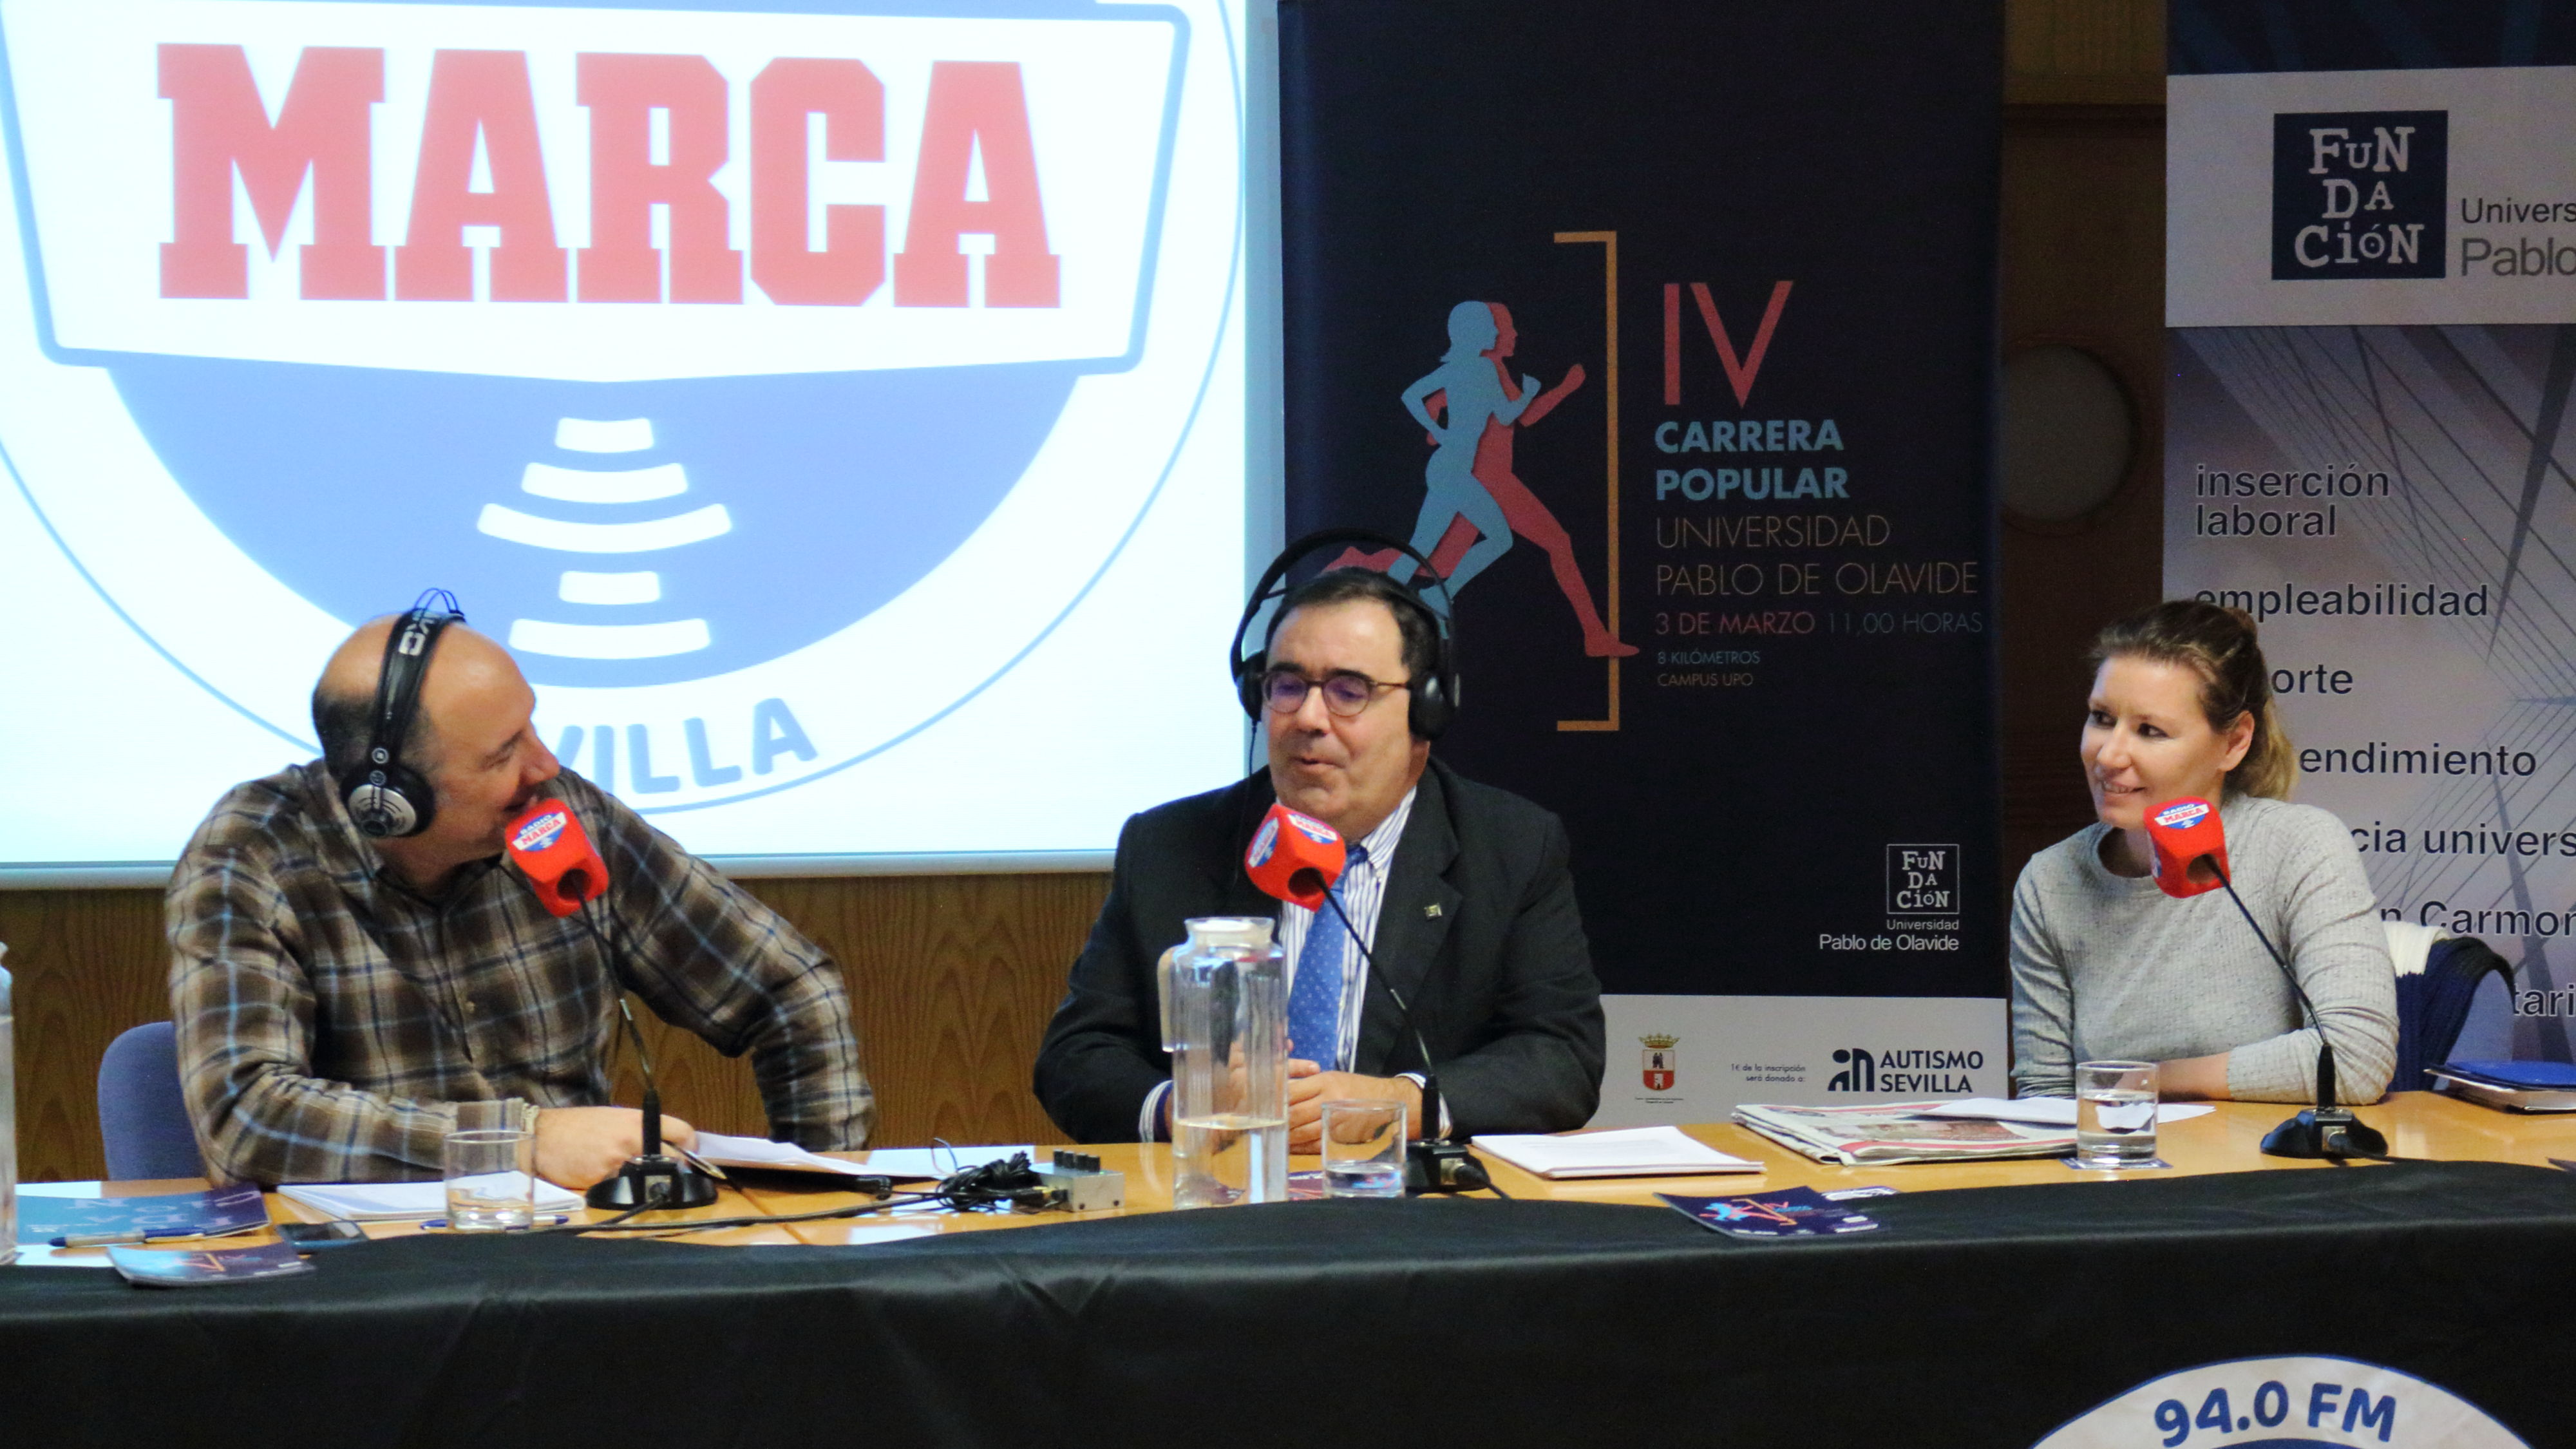 Radio Marca emite desde la UPO con motivo de la IV Carrera Popular que se  celebrará el 3 de marzo – DUPO – Diario de la Universidad Pablo de Olavide